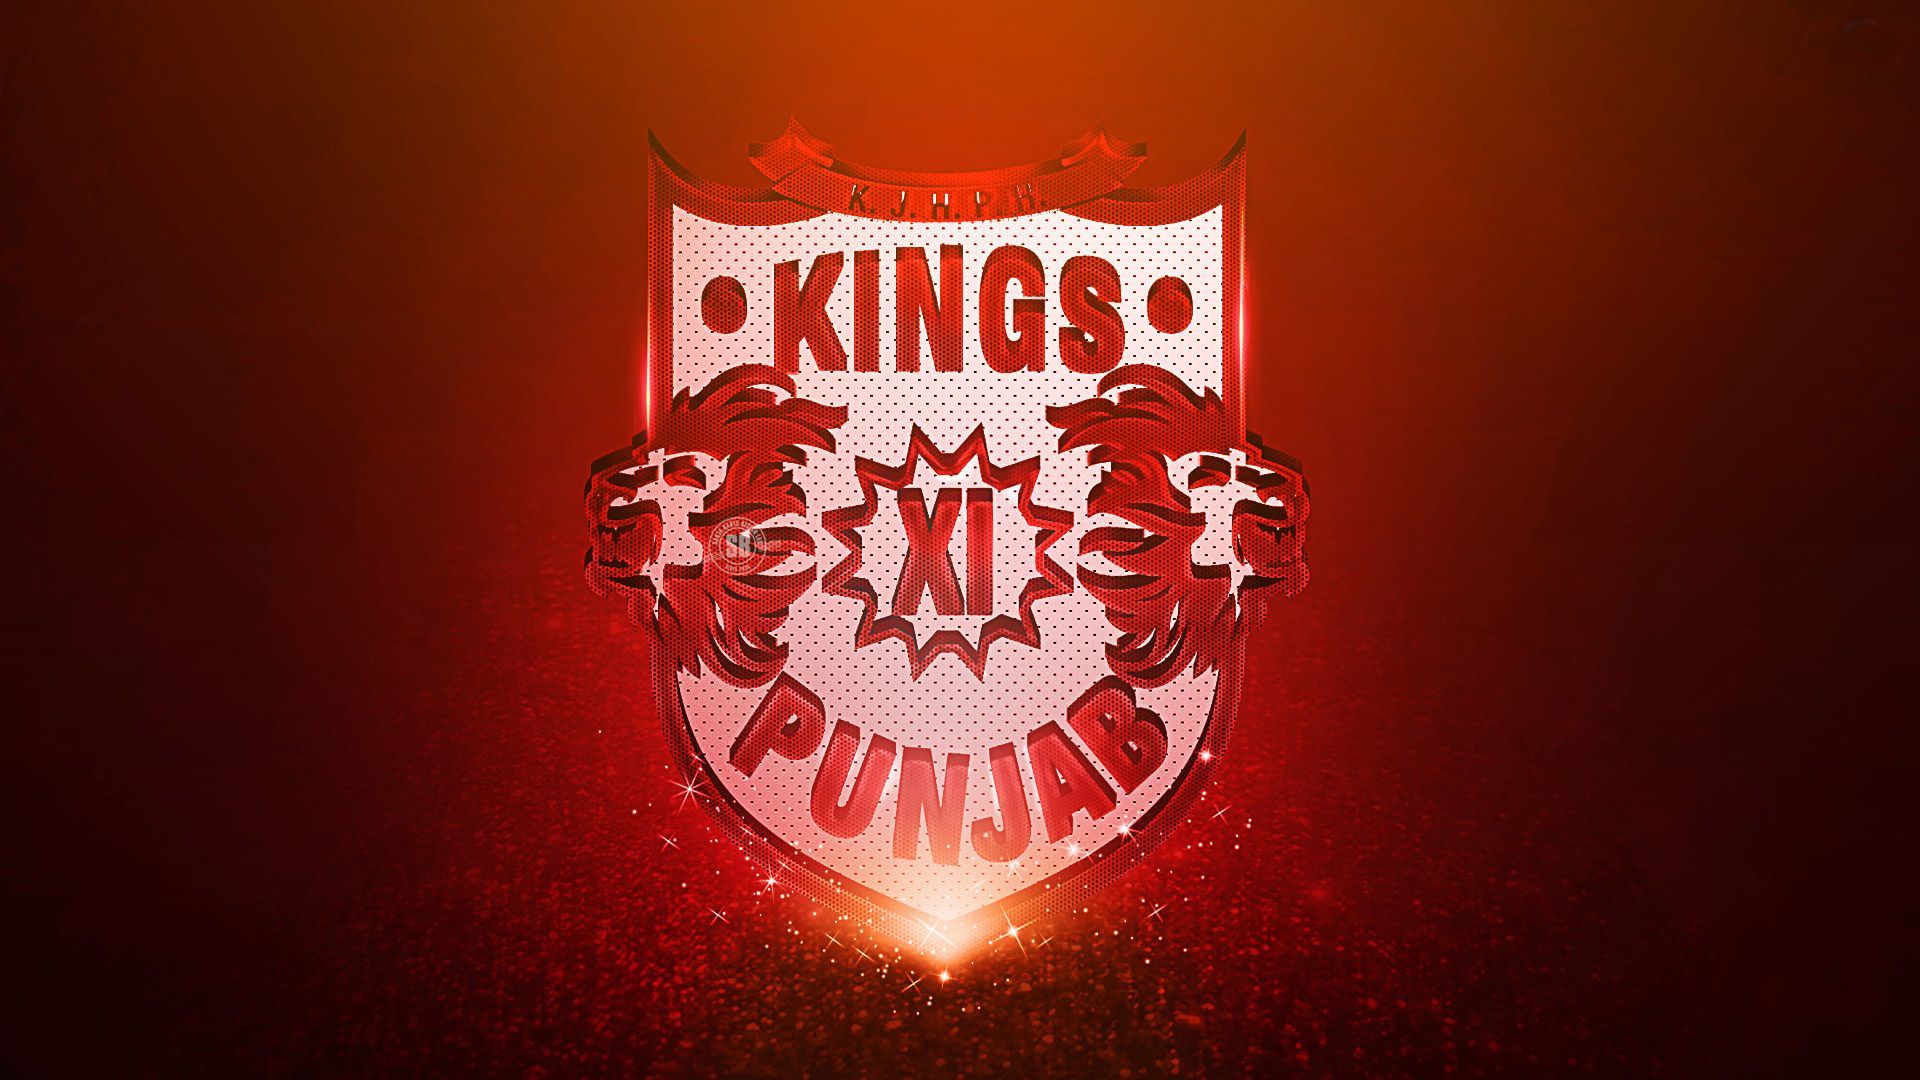 Free download IPL Team Kings XI Punjab Cricket Cricket wallpaper